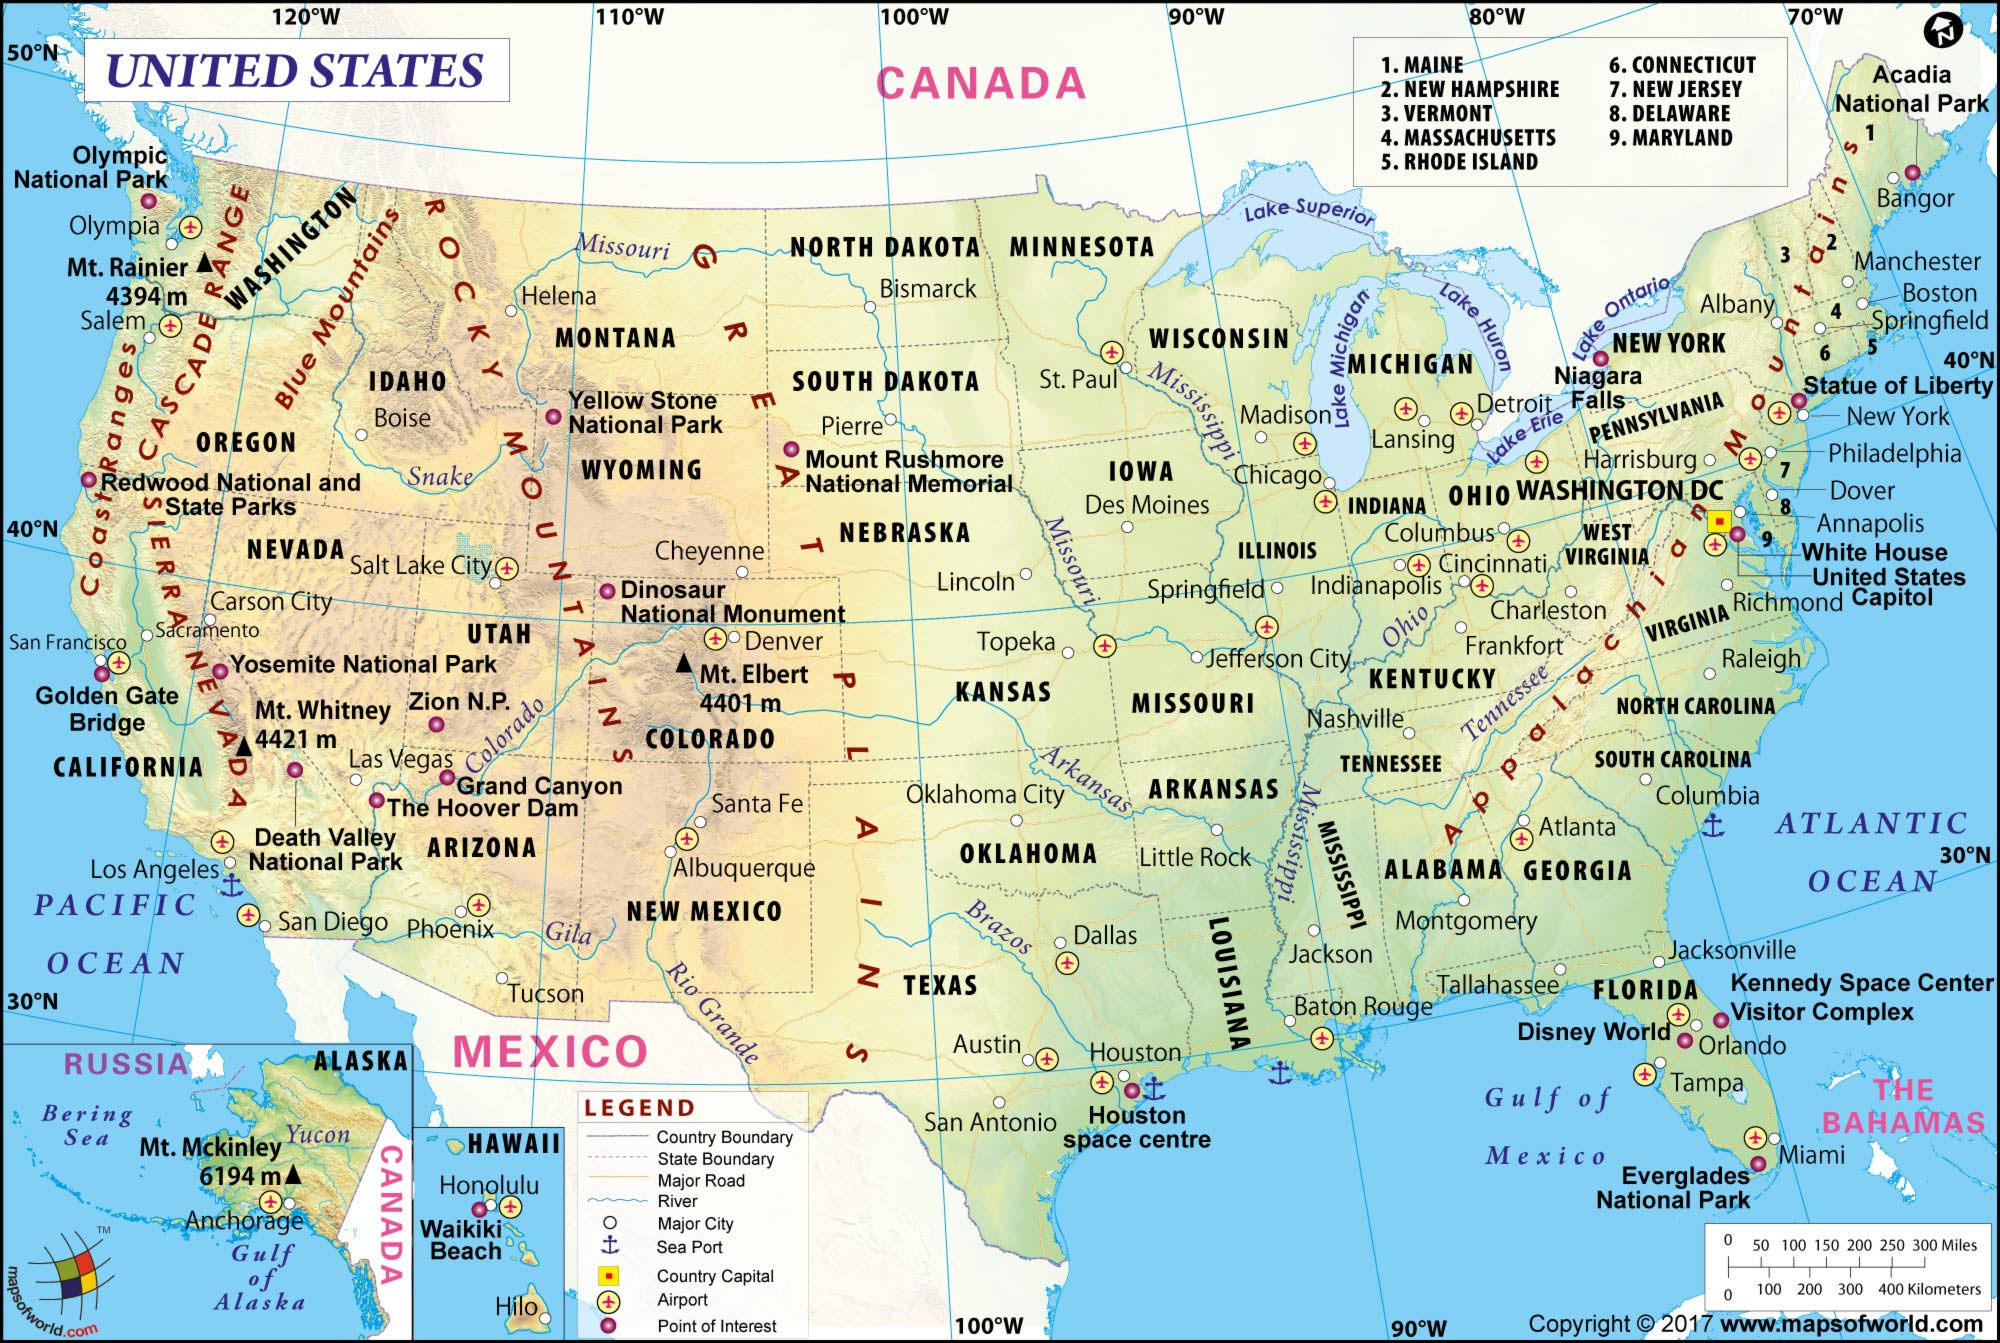 Large America/US Map Image [2000 x 1343 pixel]